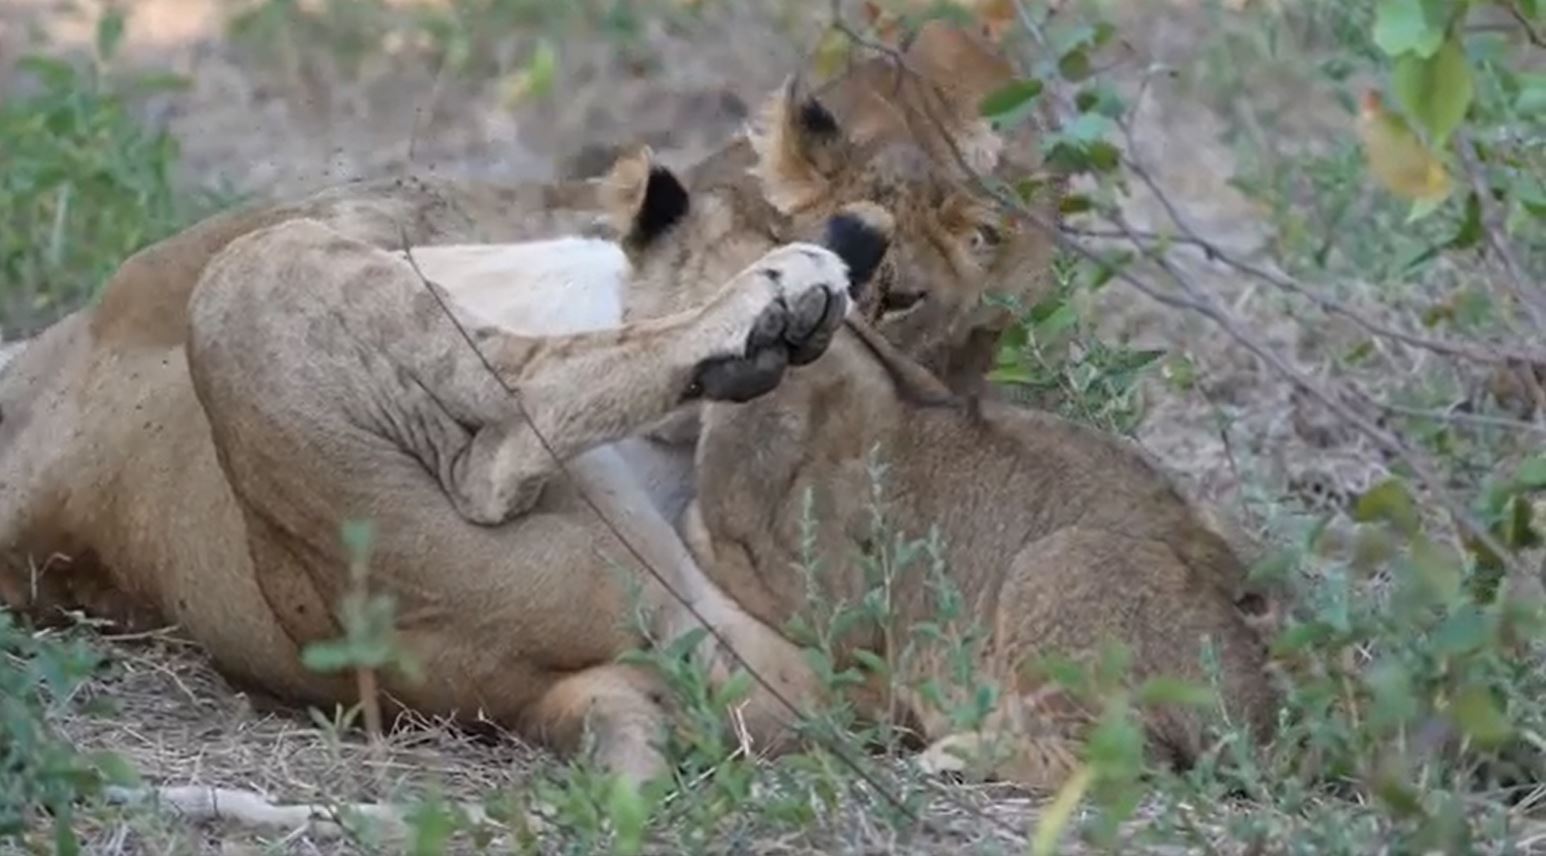 Fotosafari durch die Wildnis Sambias. Eine Löwenfamilie hat heute einen Kudu gejagt und die acht Mitglieder der Familie ruhen sich gerade aus